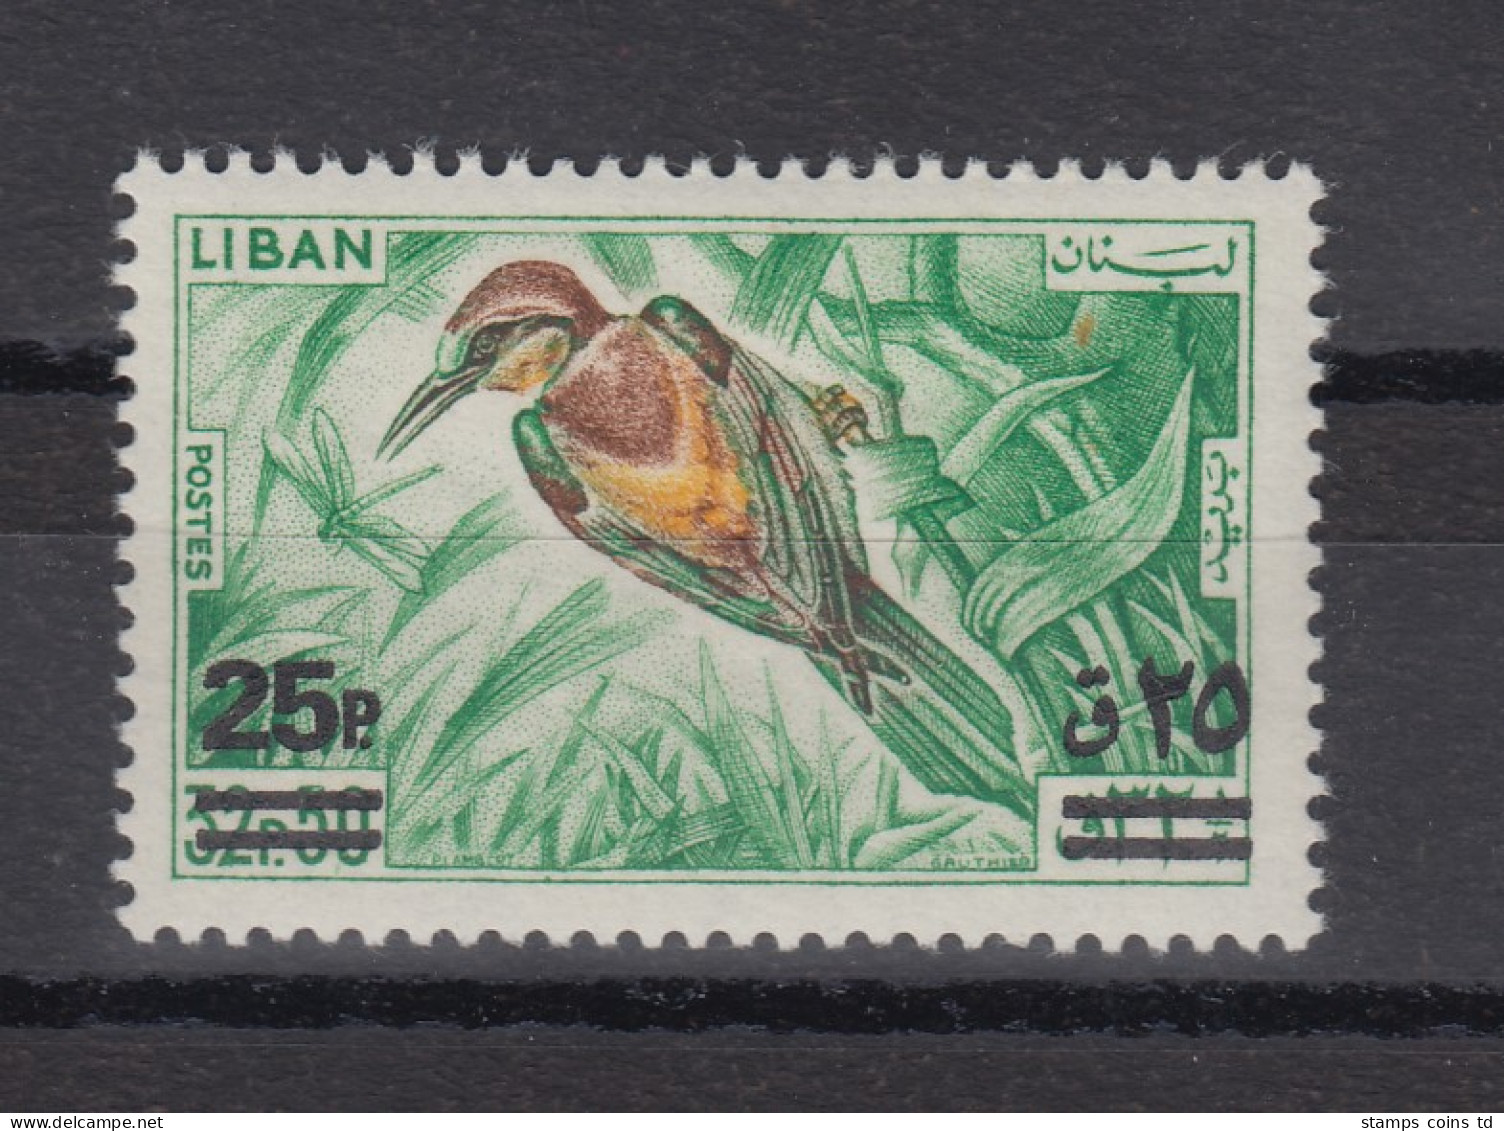 Libanon 1972 Vögel Bienenfresser Mit Aufdruck Mi.-Nr. 1150 ** - Lebanon